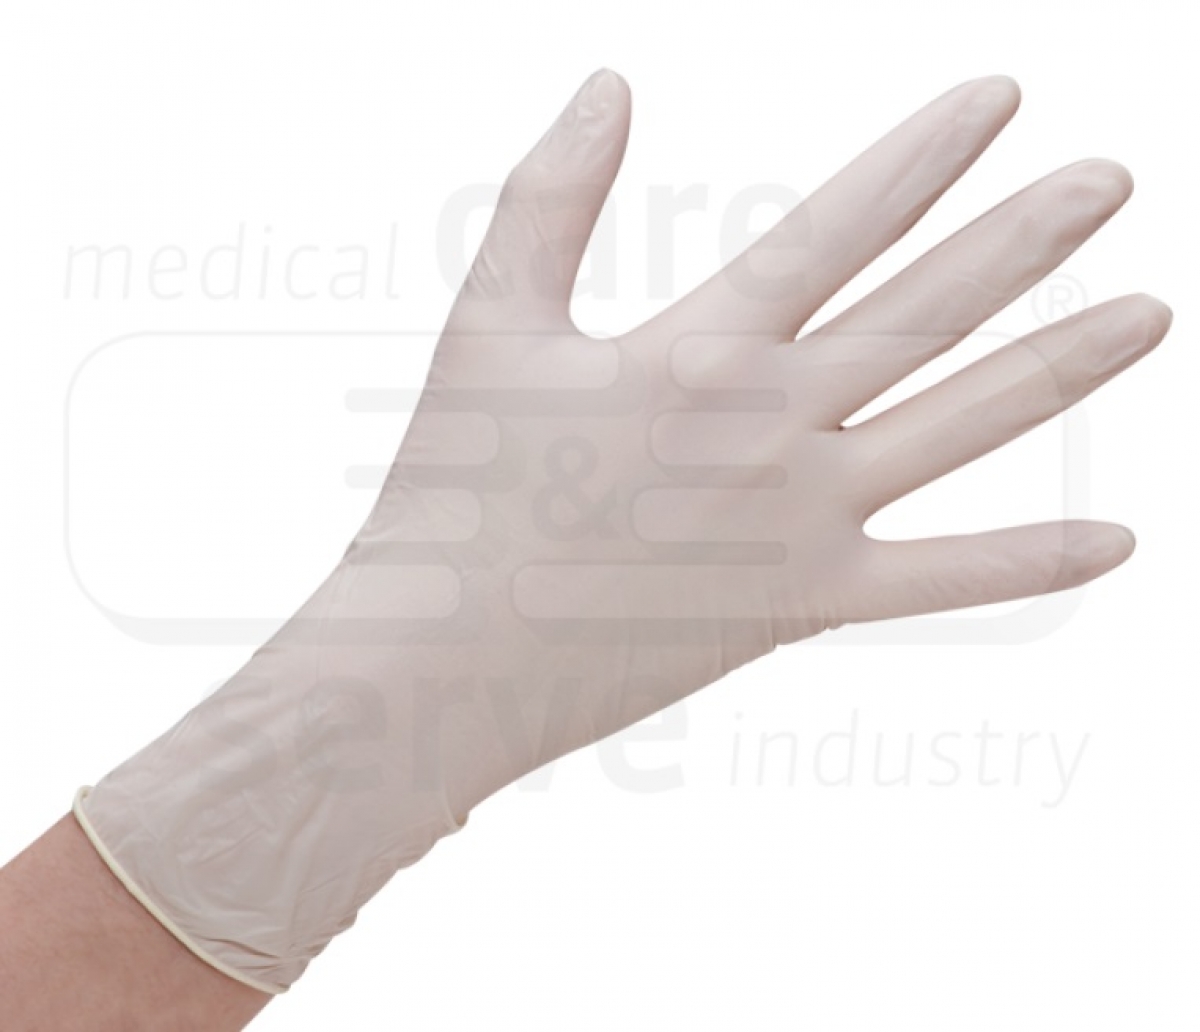 WIROS-Hand-Schutz, Einweg-Latex Handschuhe, Grip Plus, puderfrei, Spenderbox, naturwei, Pkg  100 Stck, VE = 10 Pkg.